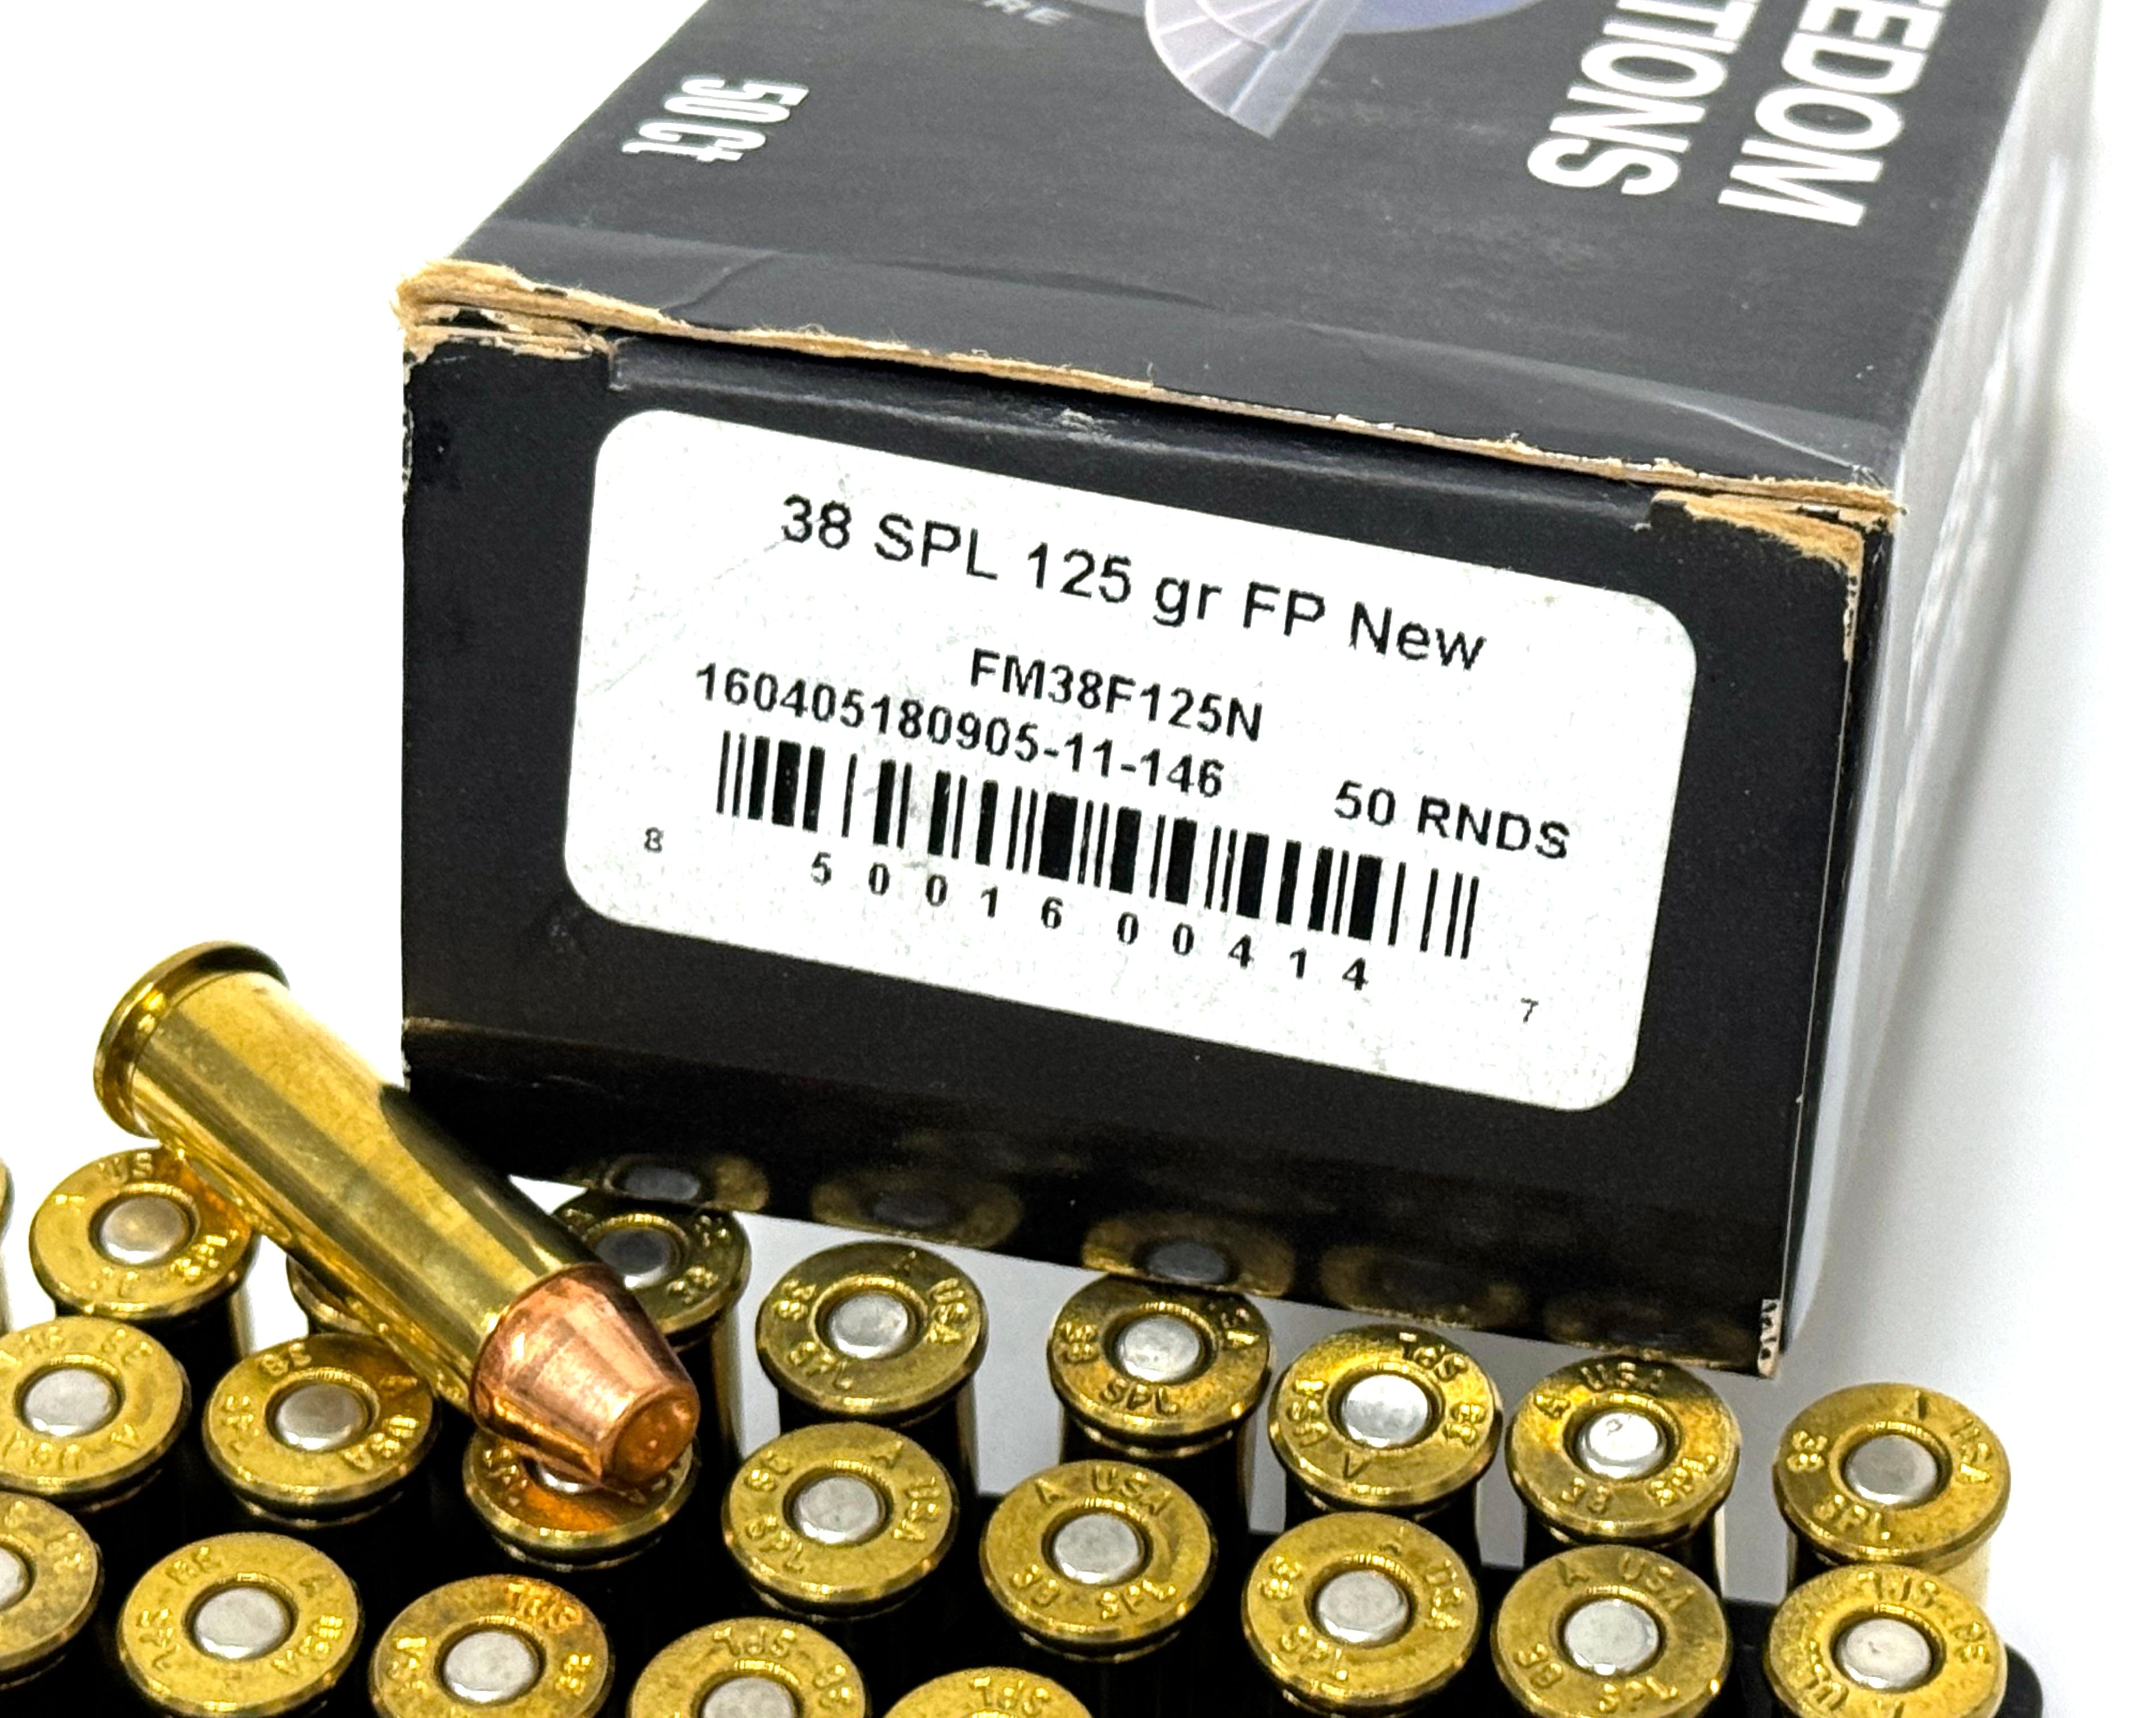 NIB 50rds. Of .38 SPL. 125gr. FP Freedom Munitions Ammo